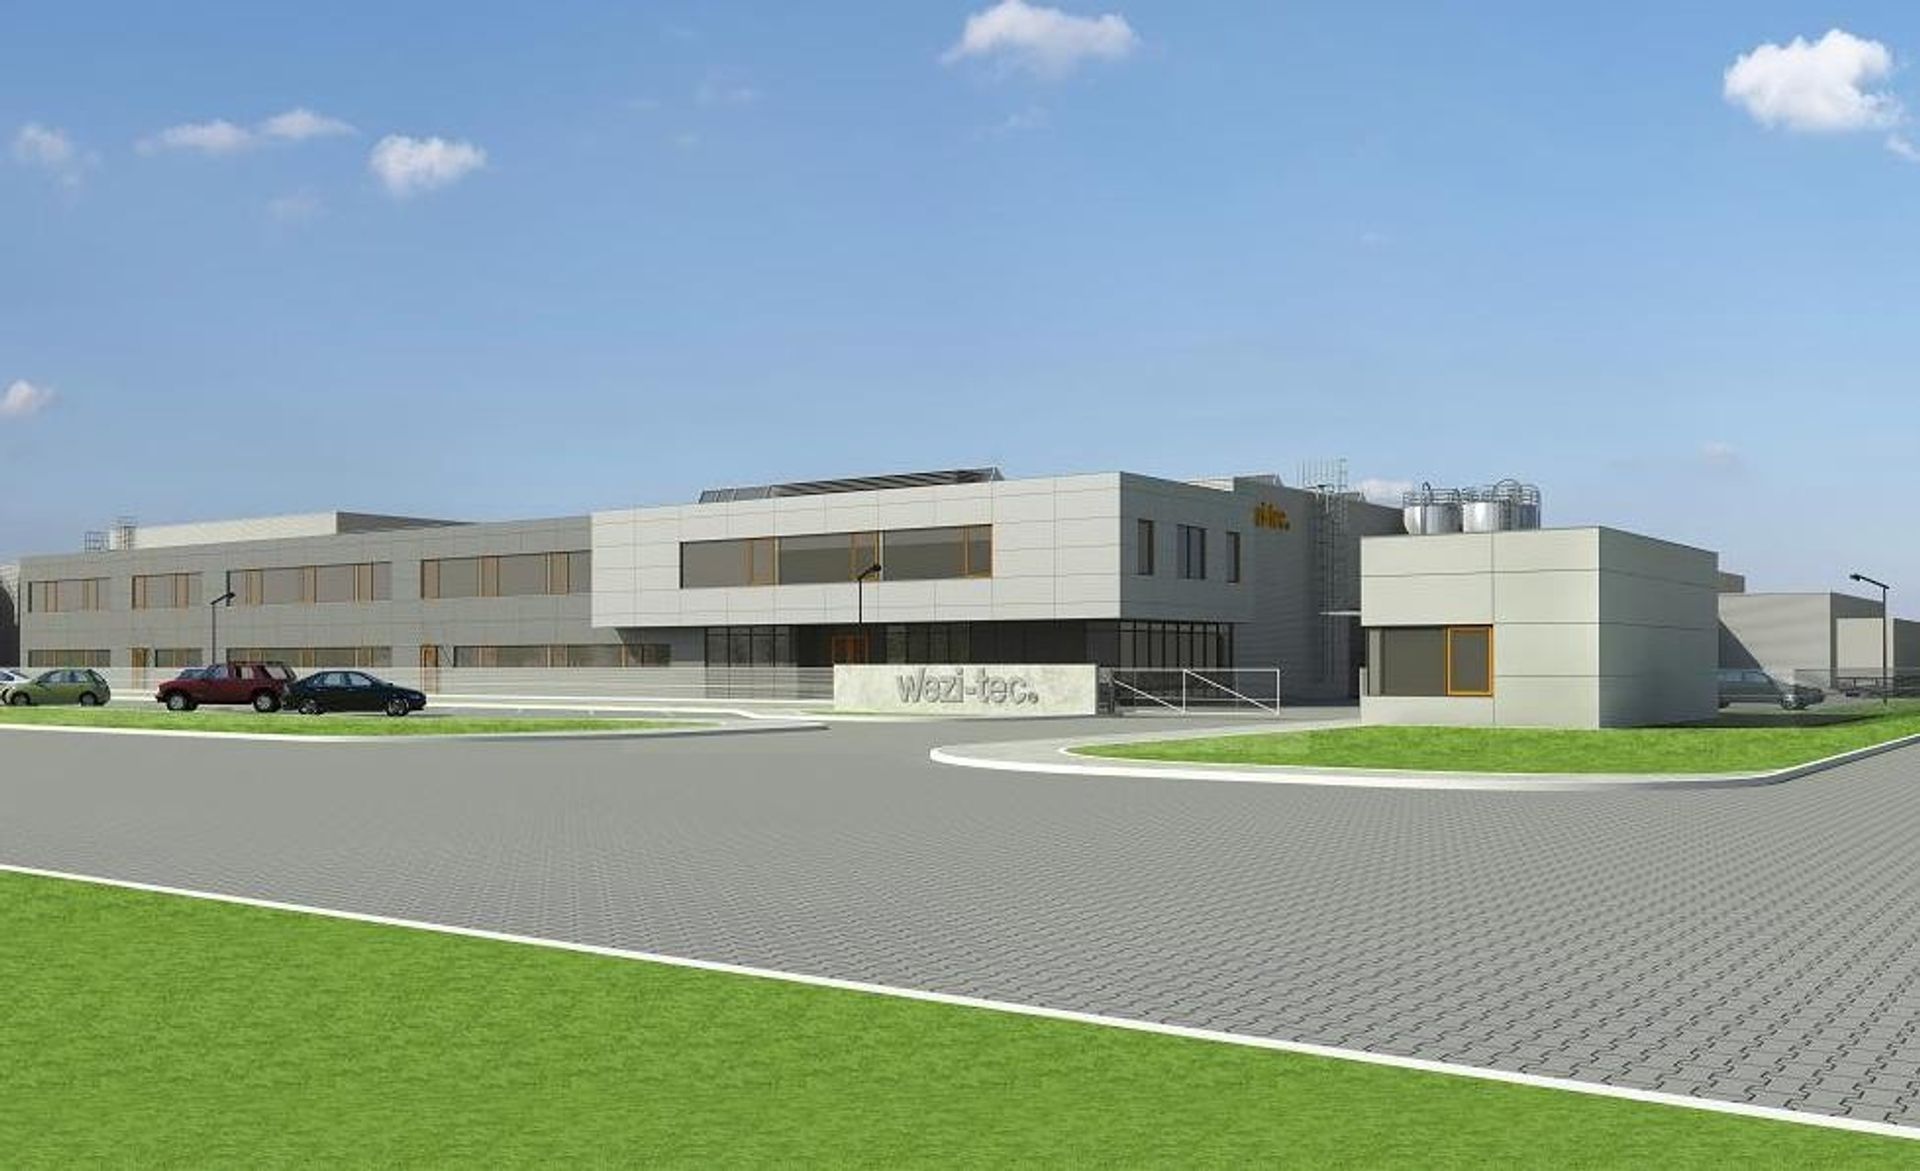  Niemiecki Wezi-tec rozbuduje swoją fabrykę w Legnicy